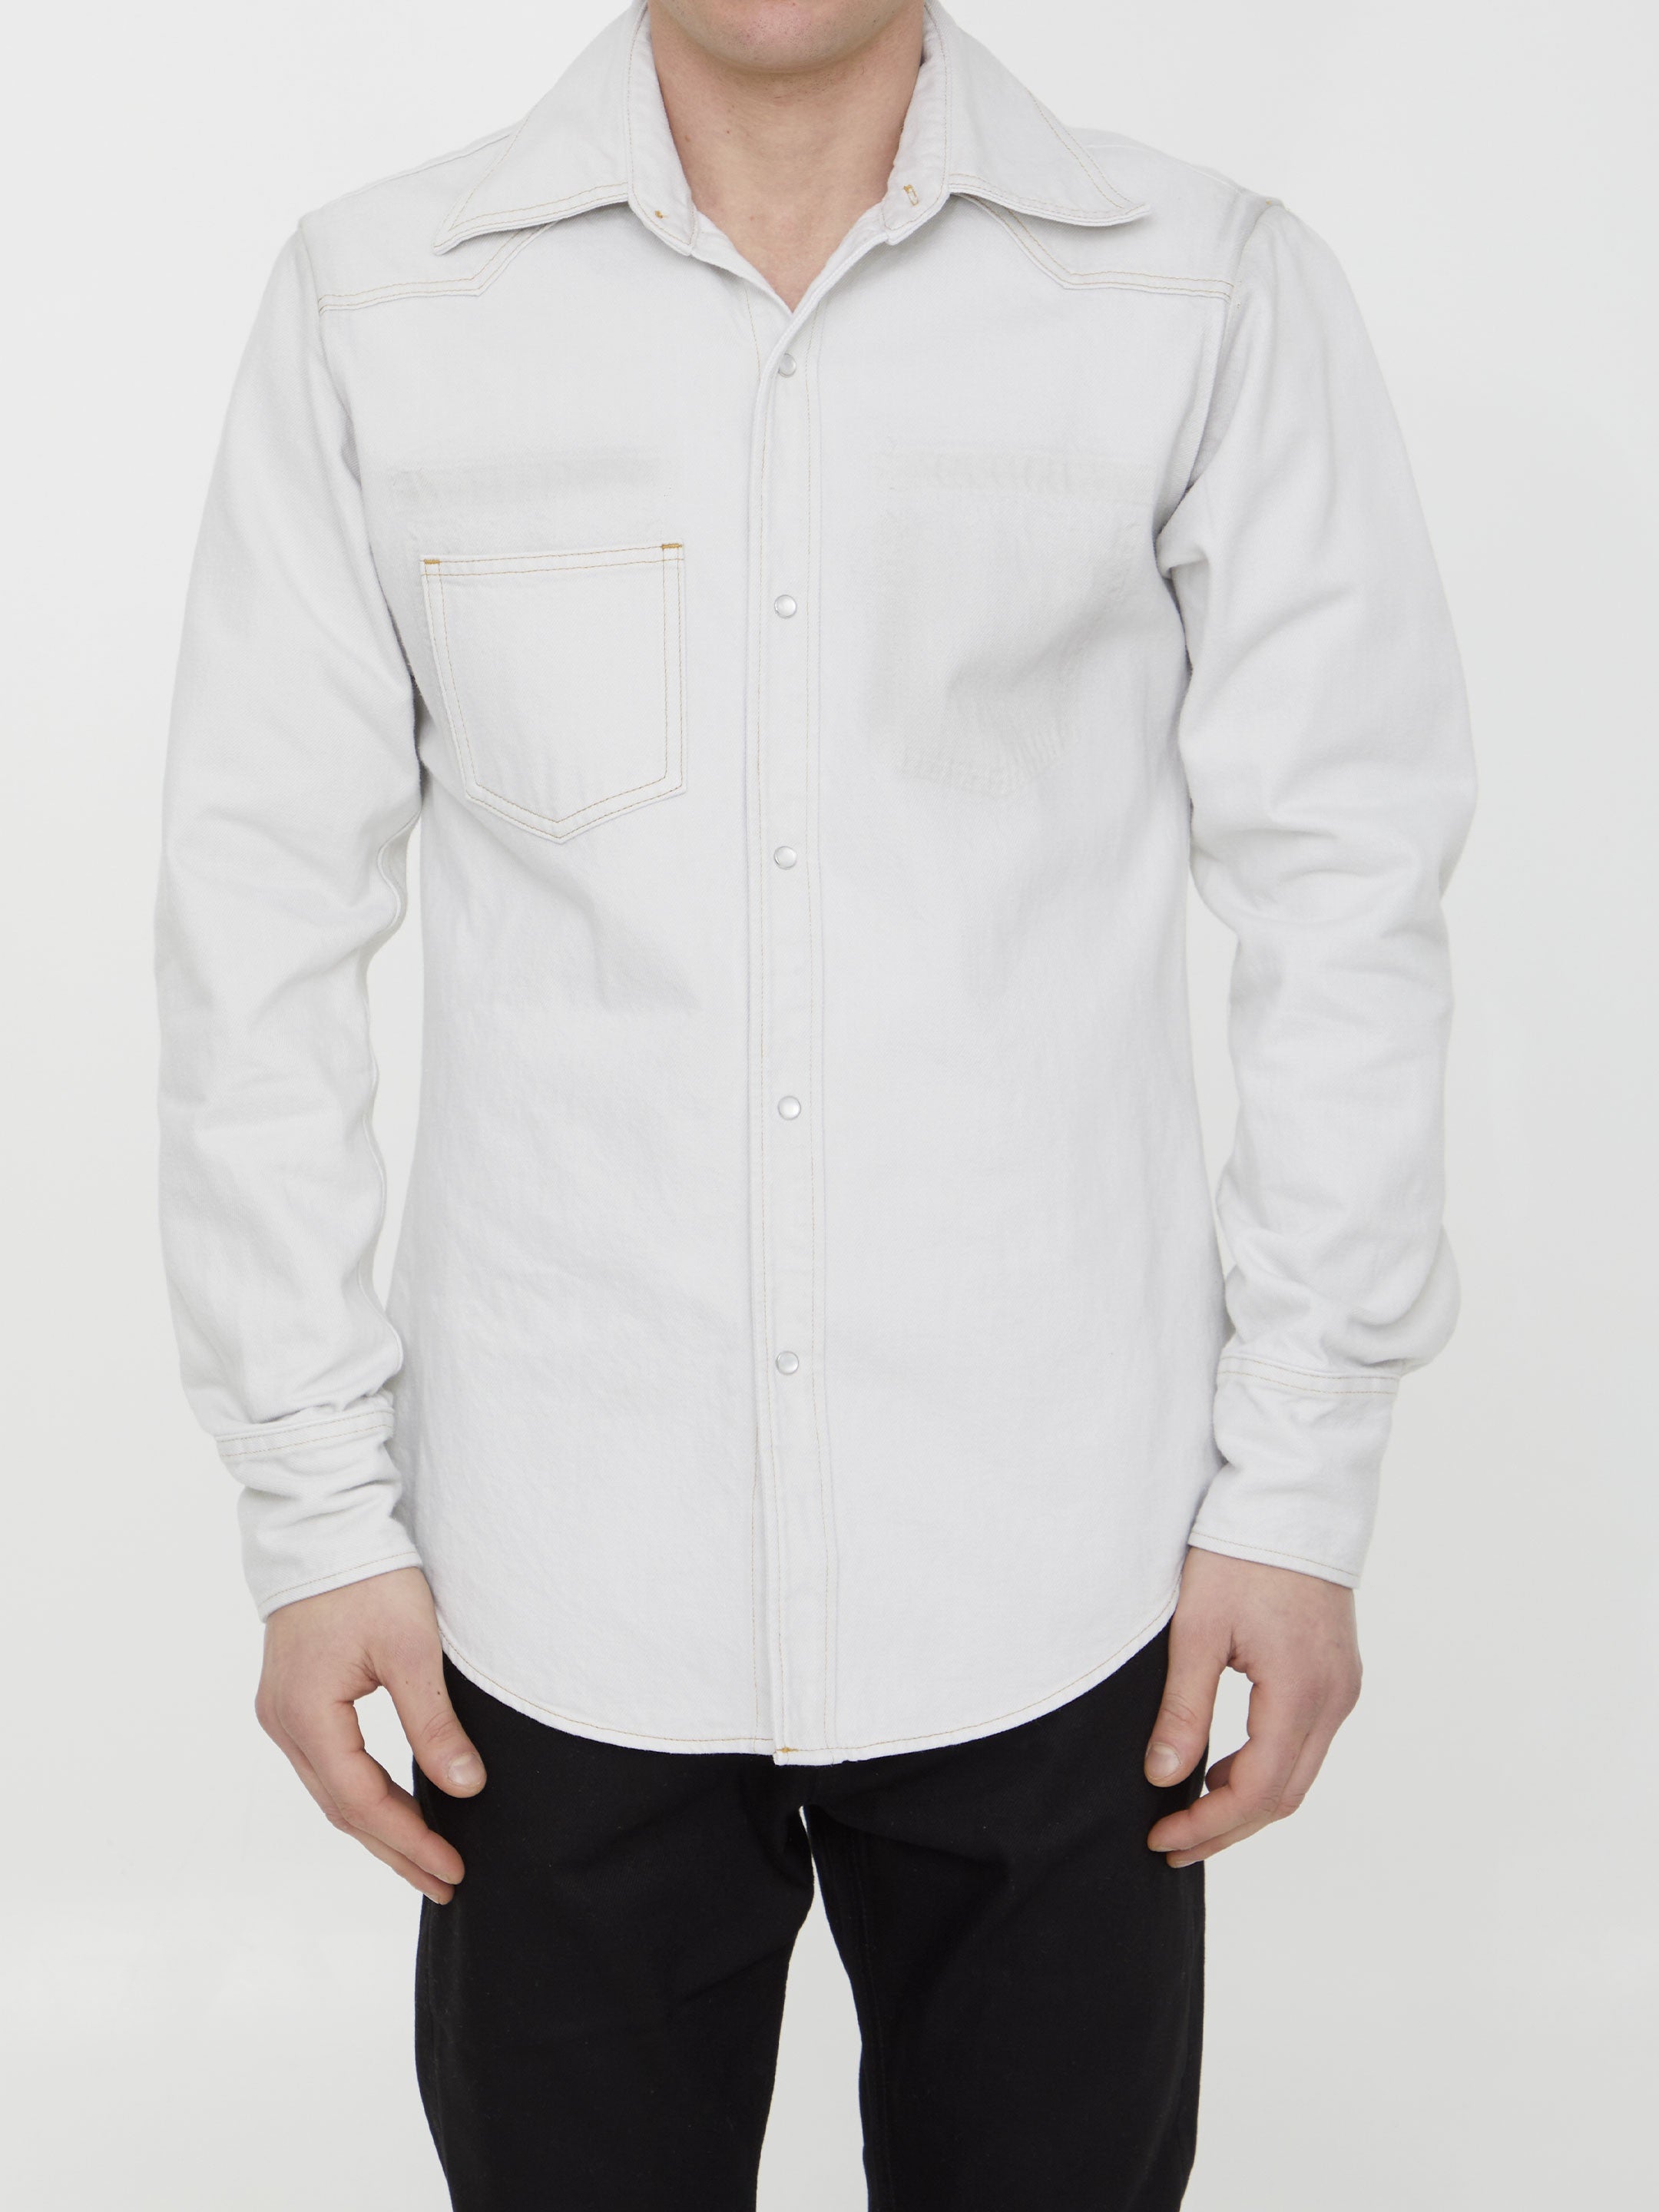 MAISON-MARGIELA-OUTLET-SALE-Cotton-denim-shirt-Shirts-39-WHITE-ARCHIVE-COLLECTION.jpg